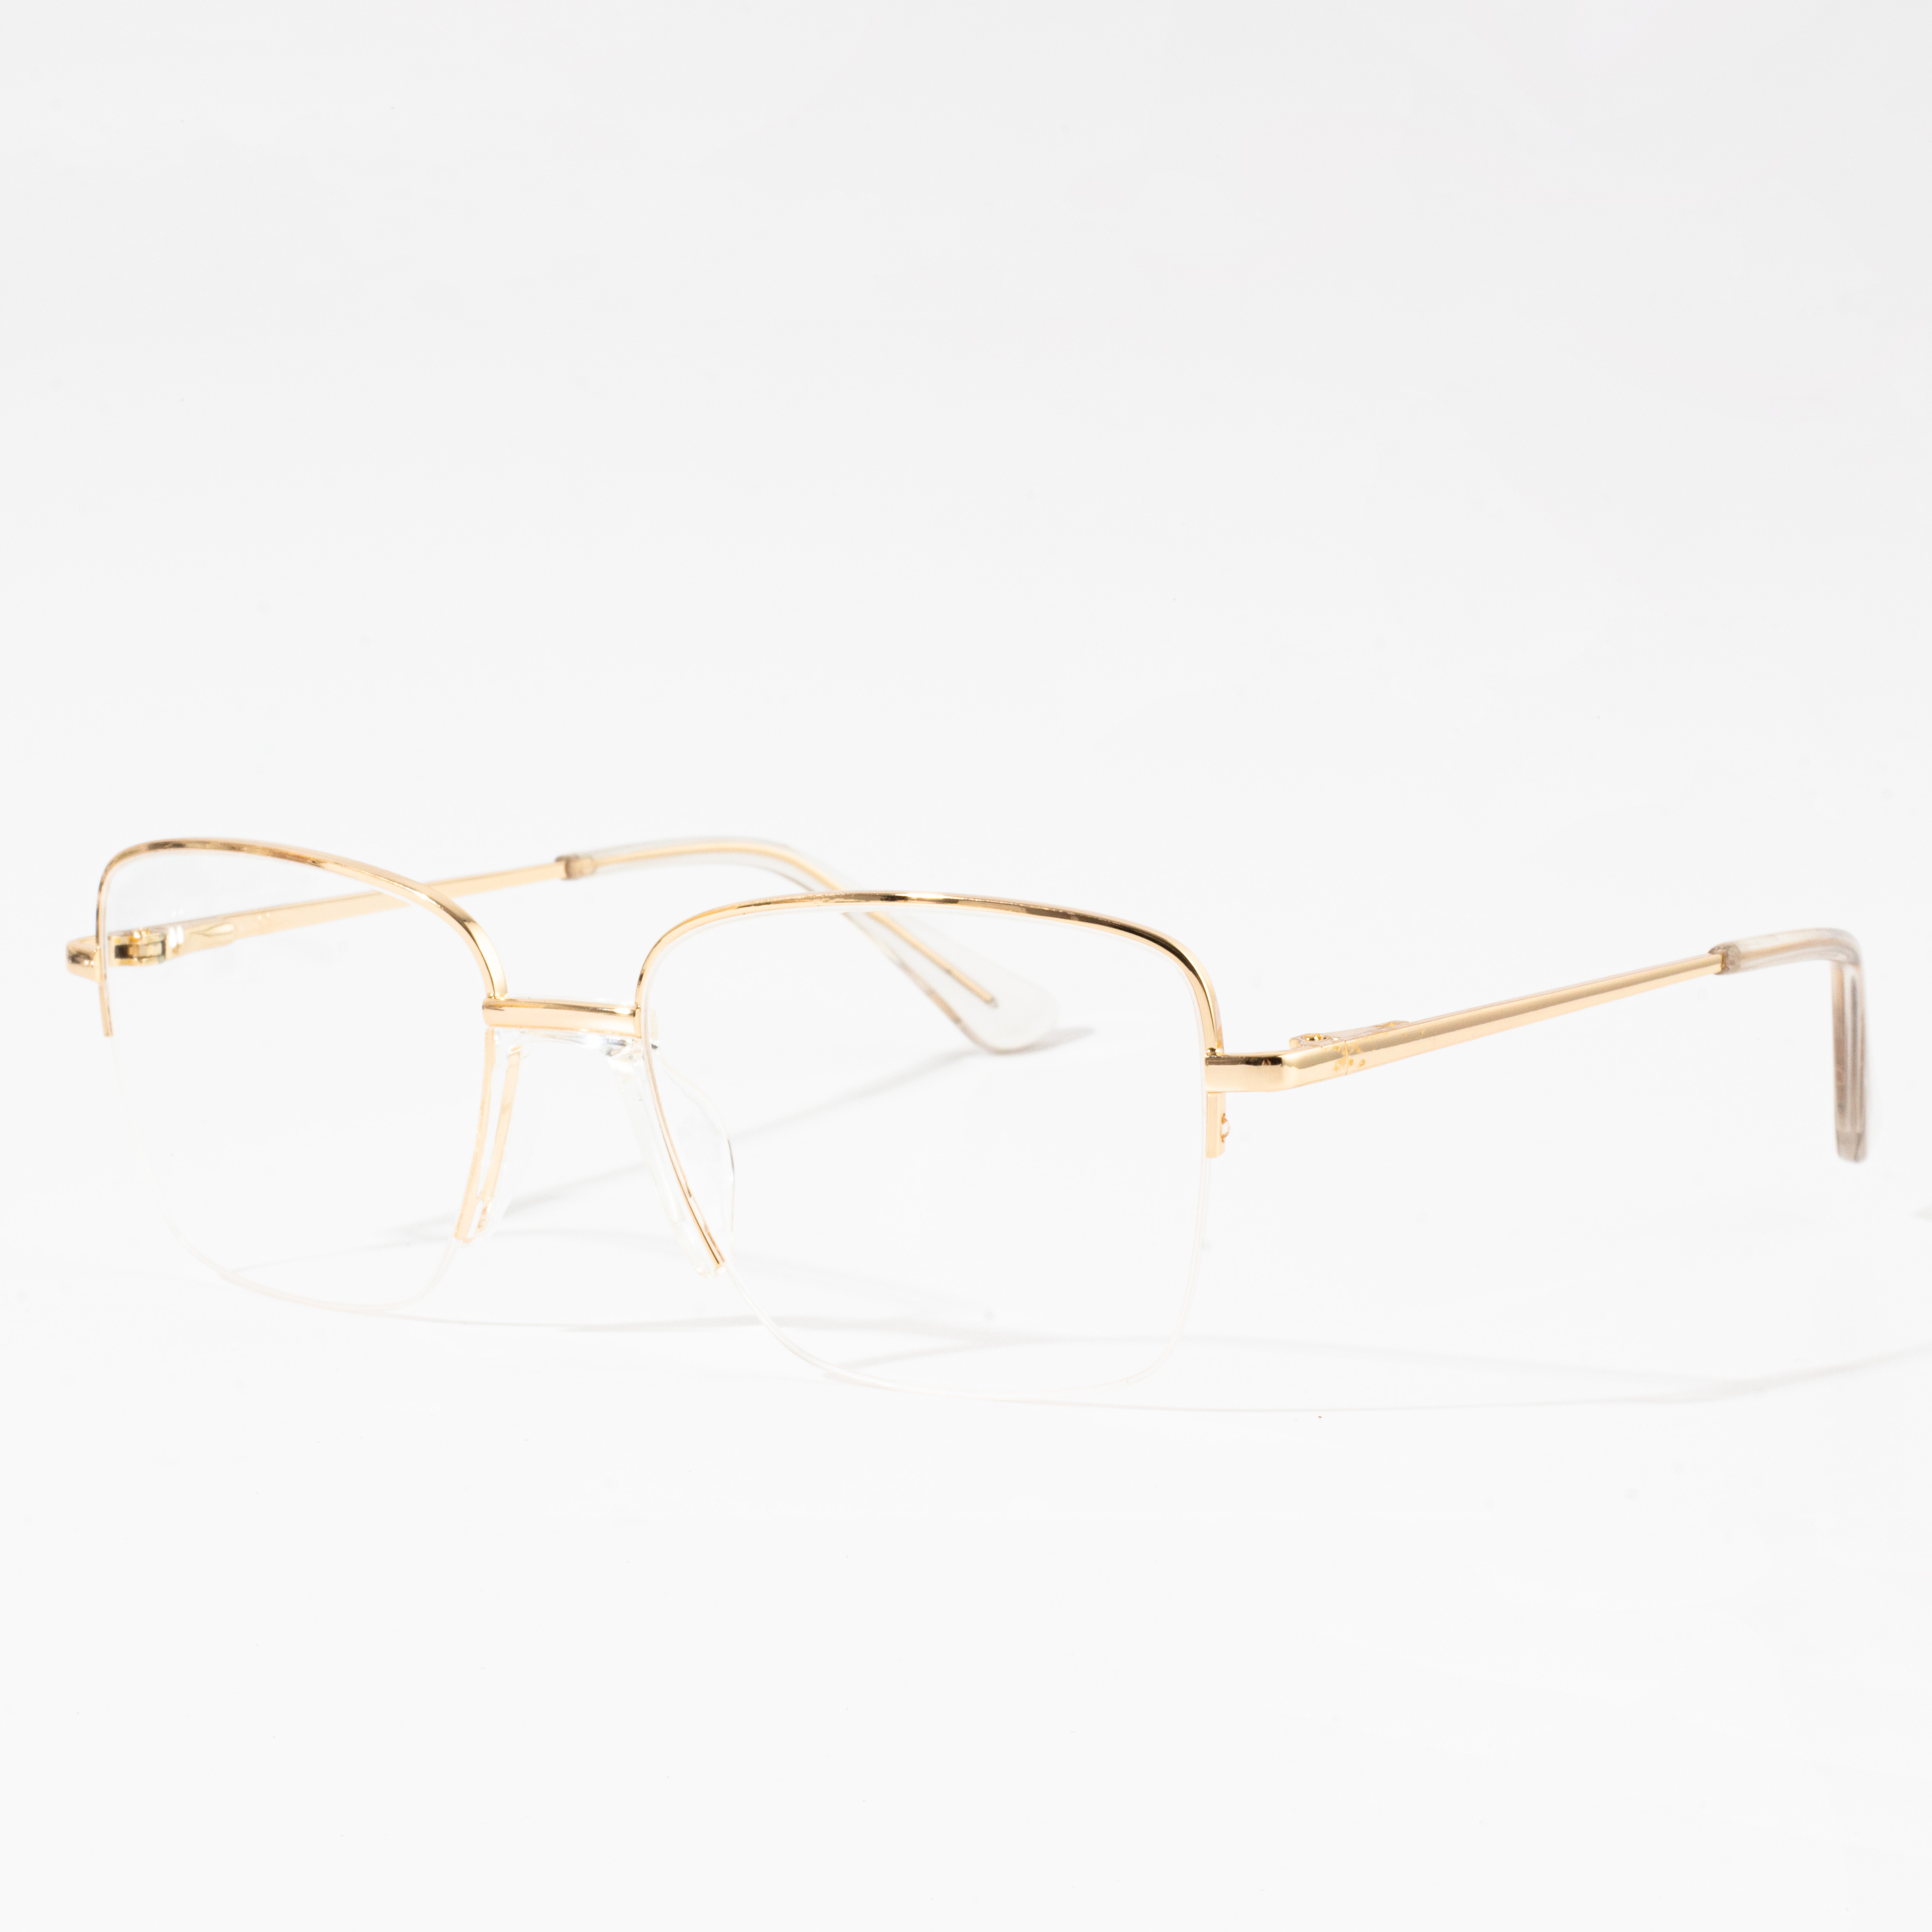 frame kacamata pria